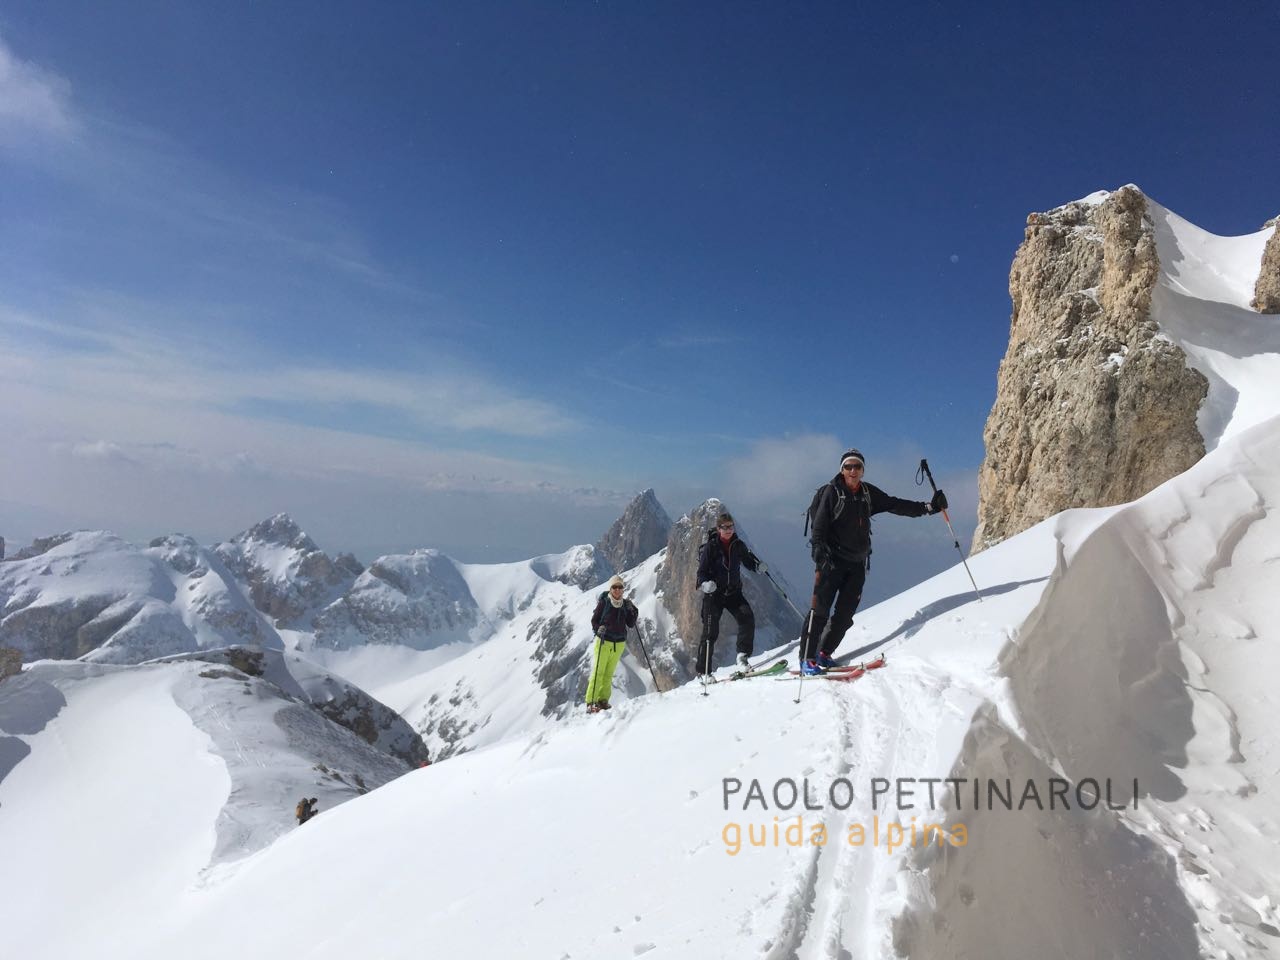 scialpinismo1 - paolo pettinaroli guida alpina